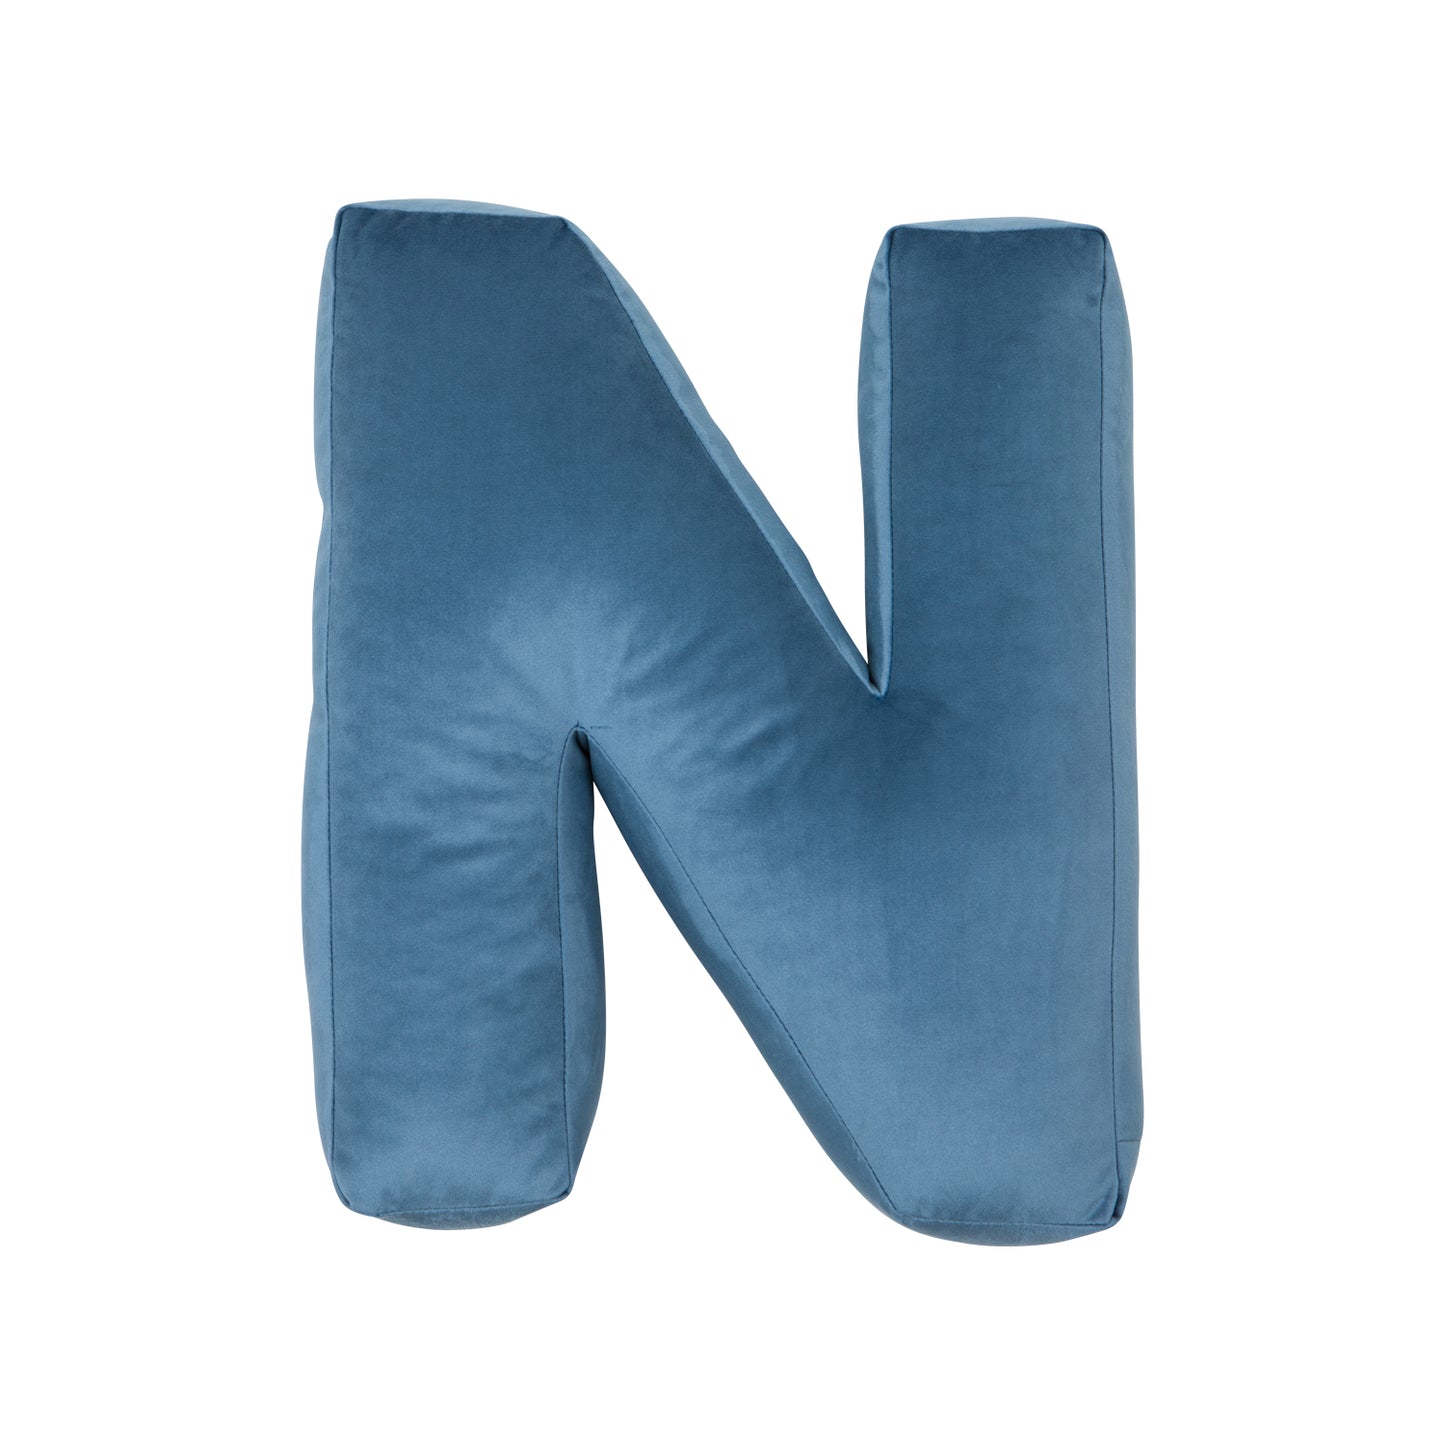 velvet letter cushion n blue by bettys home 